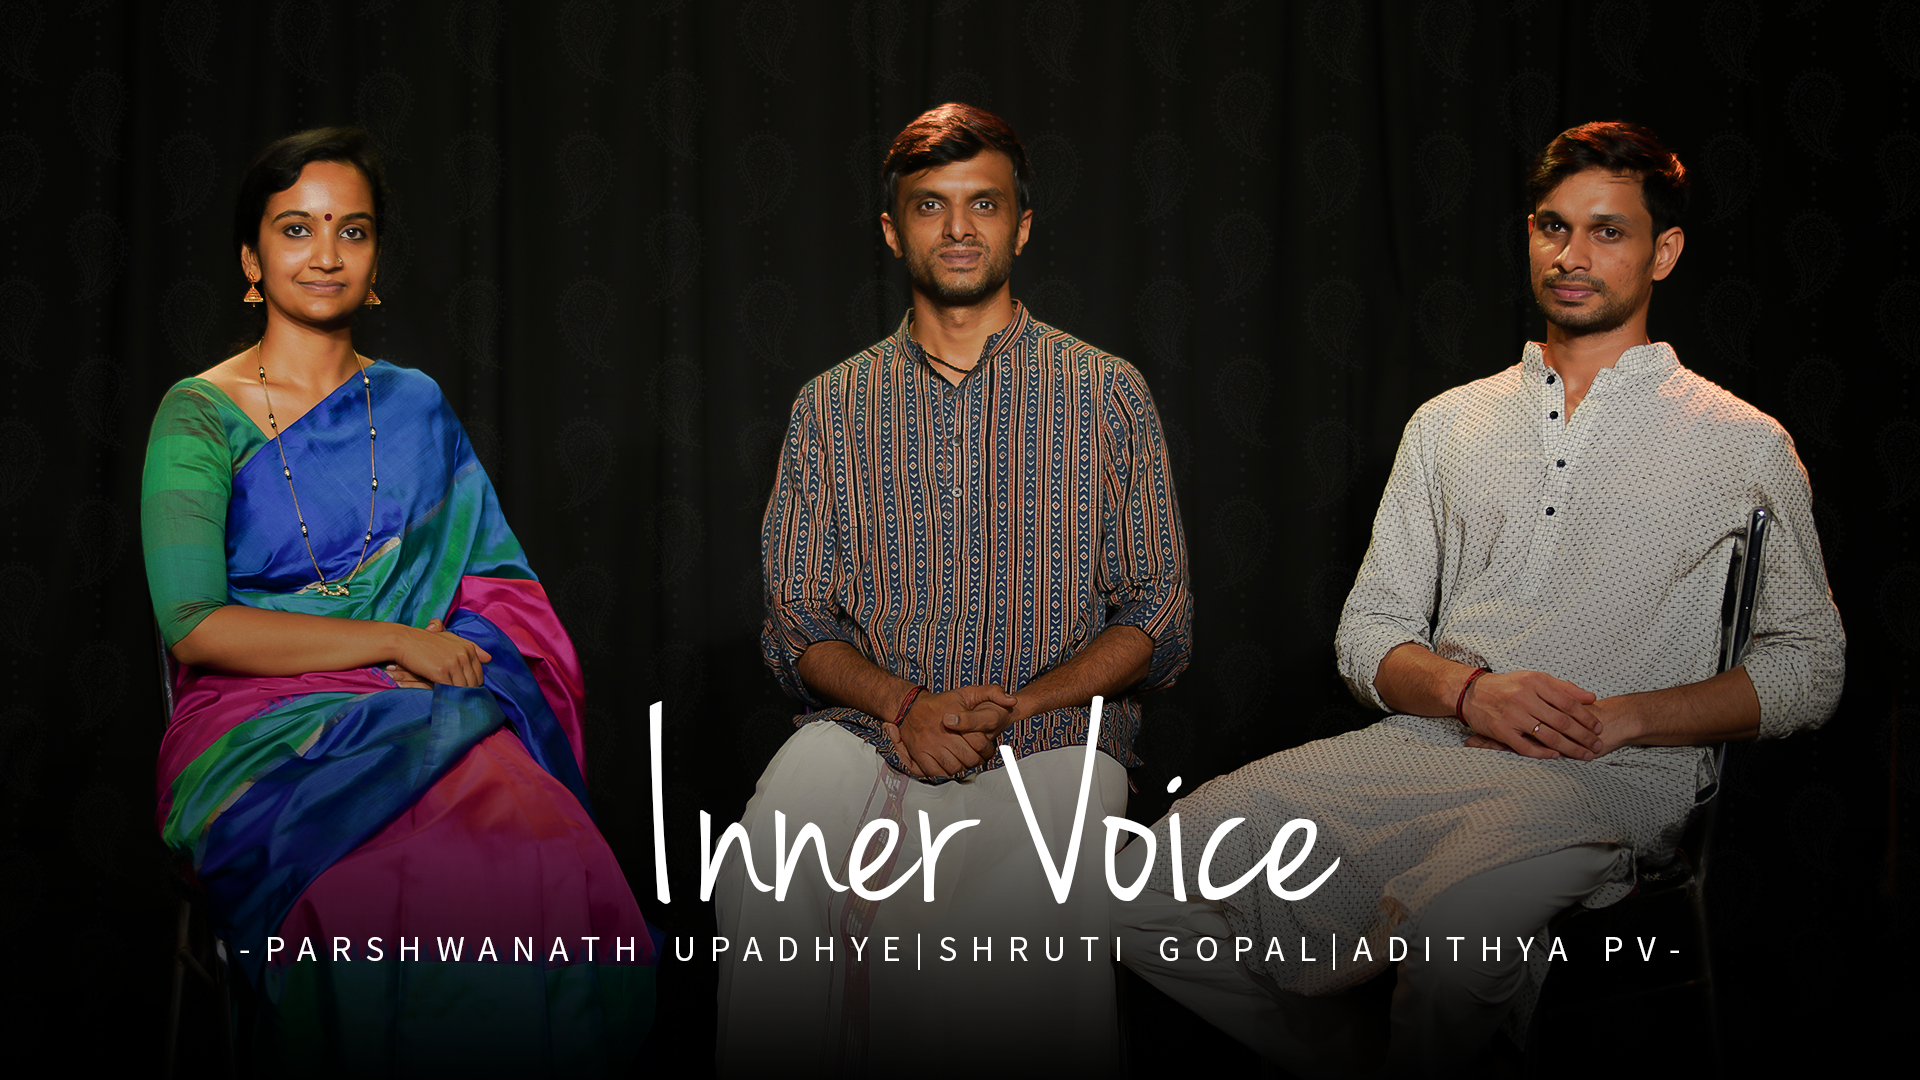 Inner Voice - Parshwanath Upadhye|Shruti Gopal|Adithya PV